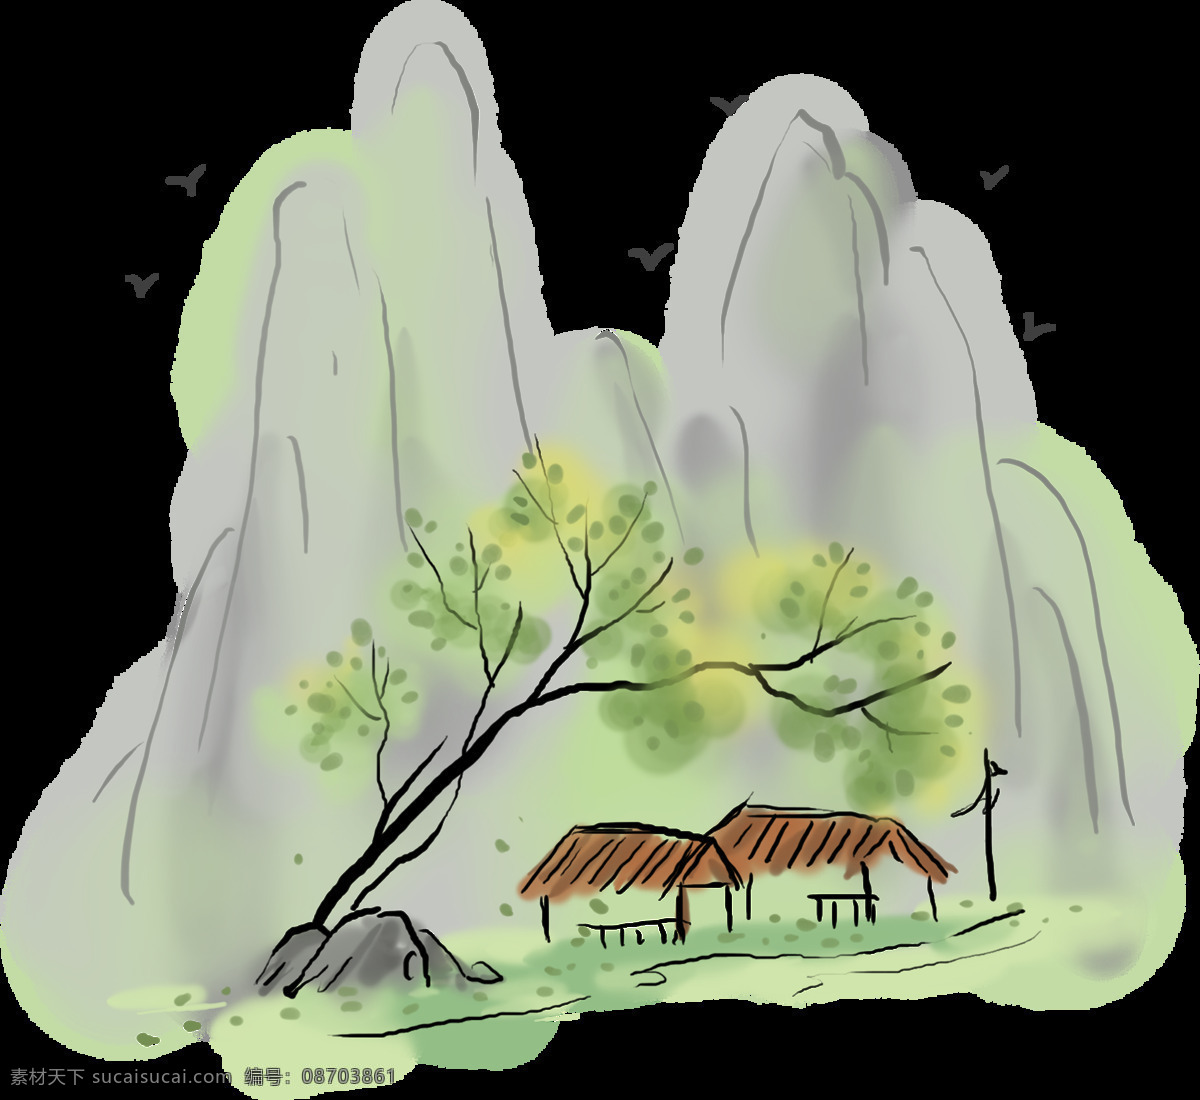 中国风 插图图片 古典 假山 插图 水墨山水